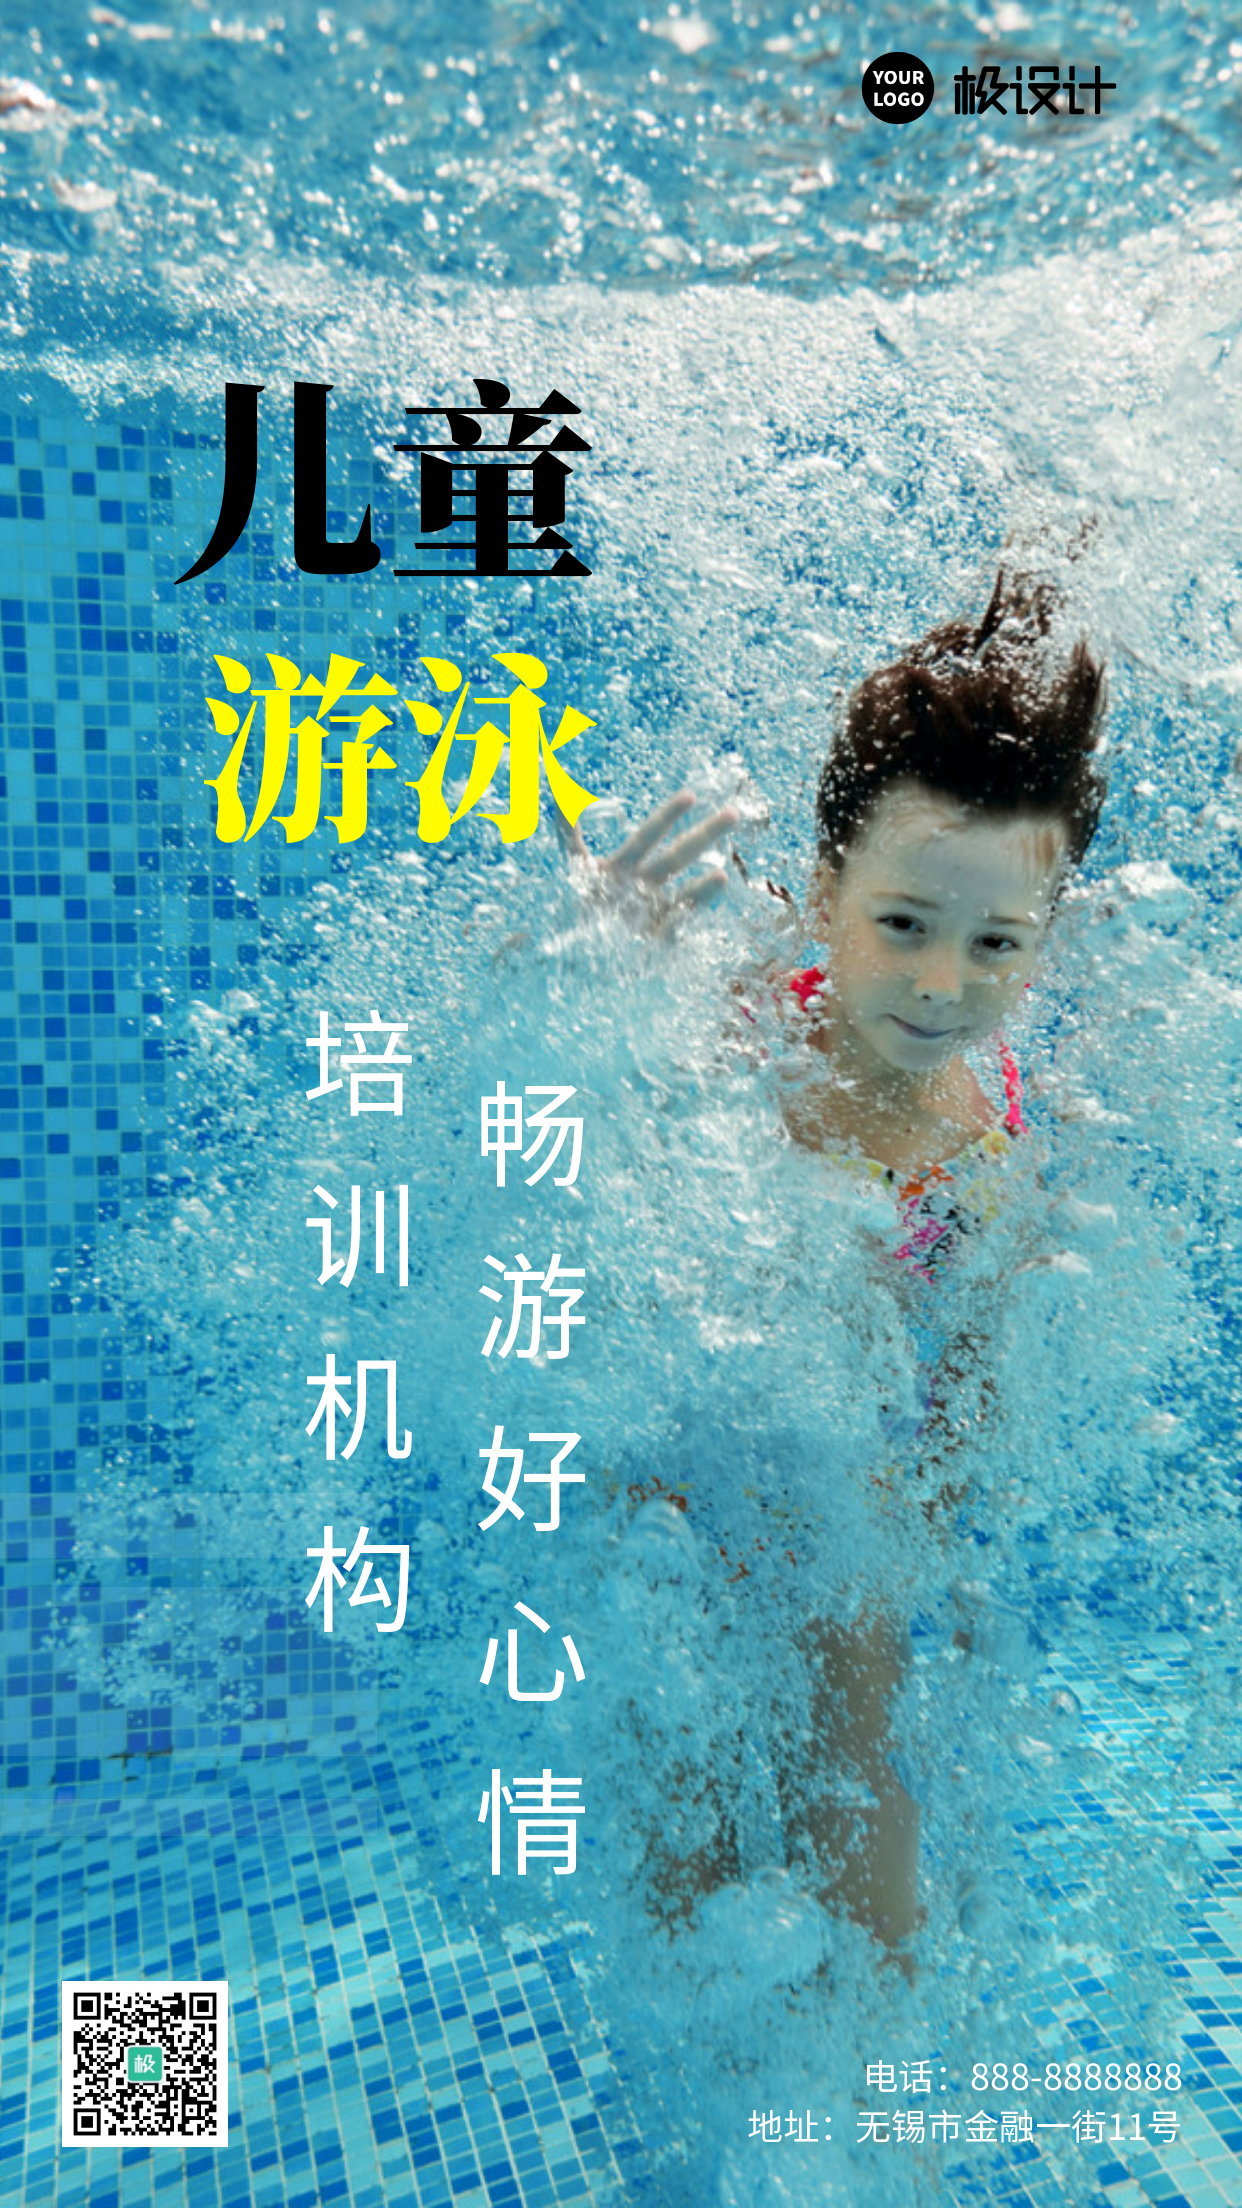 简约大气游泳馆机构促销宣传手机营销海报